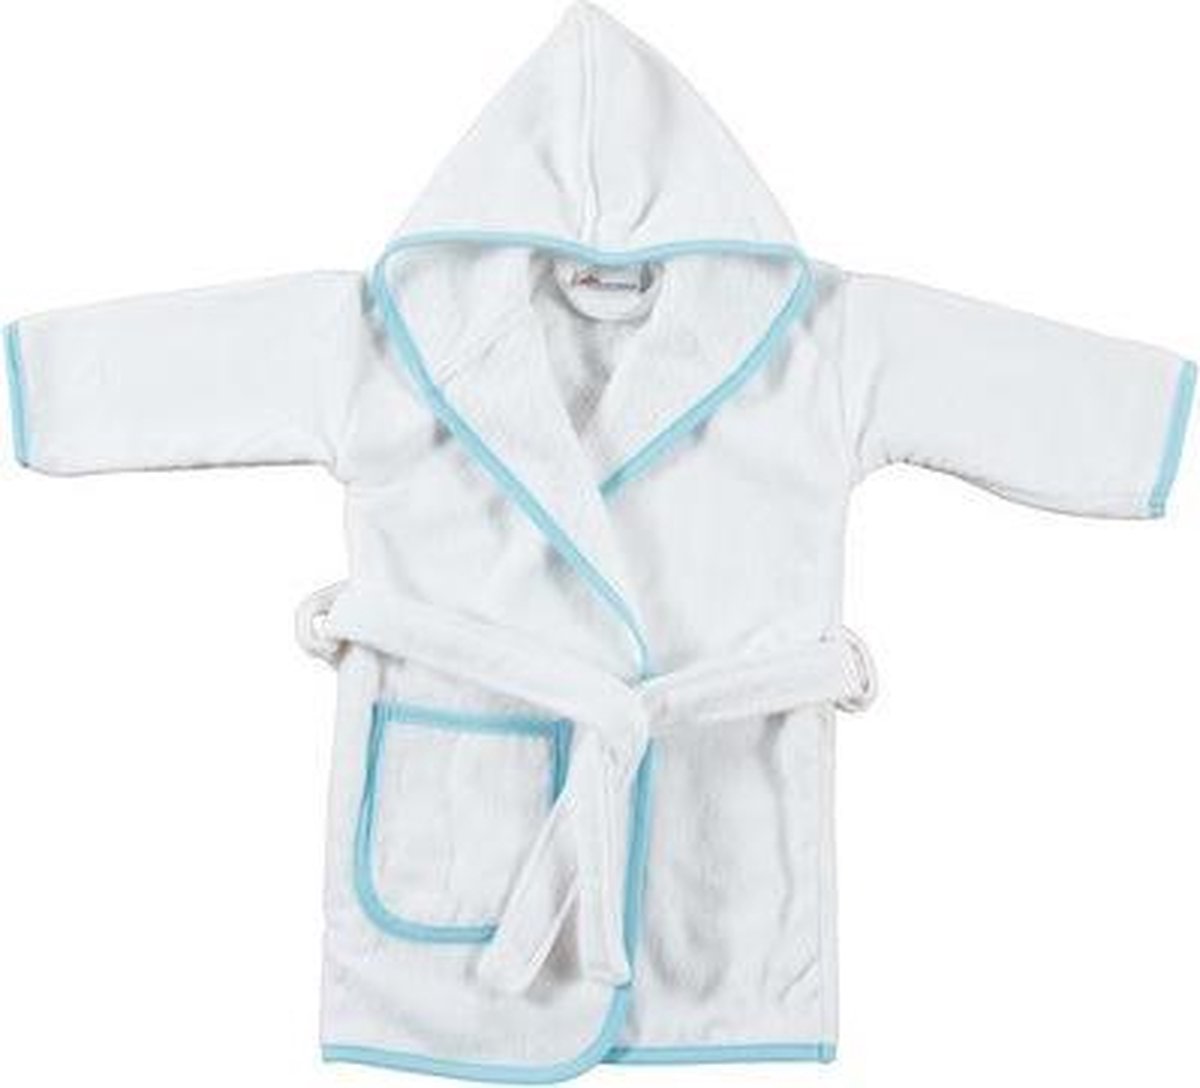 Baby badjas wit met blauw 7-12 maand